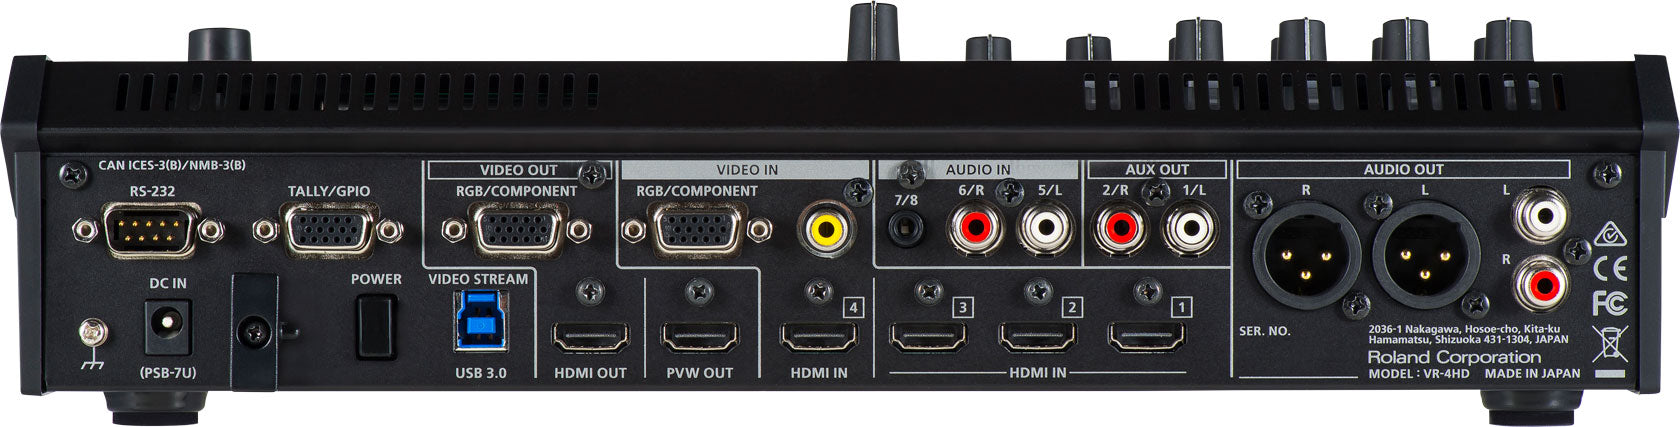 Roland VR-4HD AV Streaming Mixer